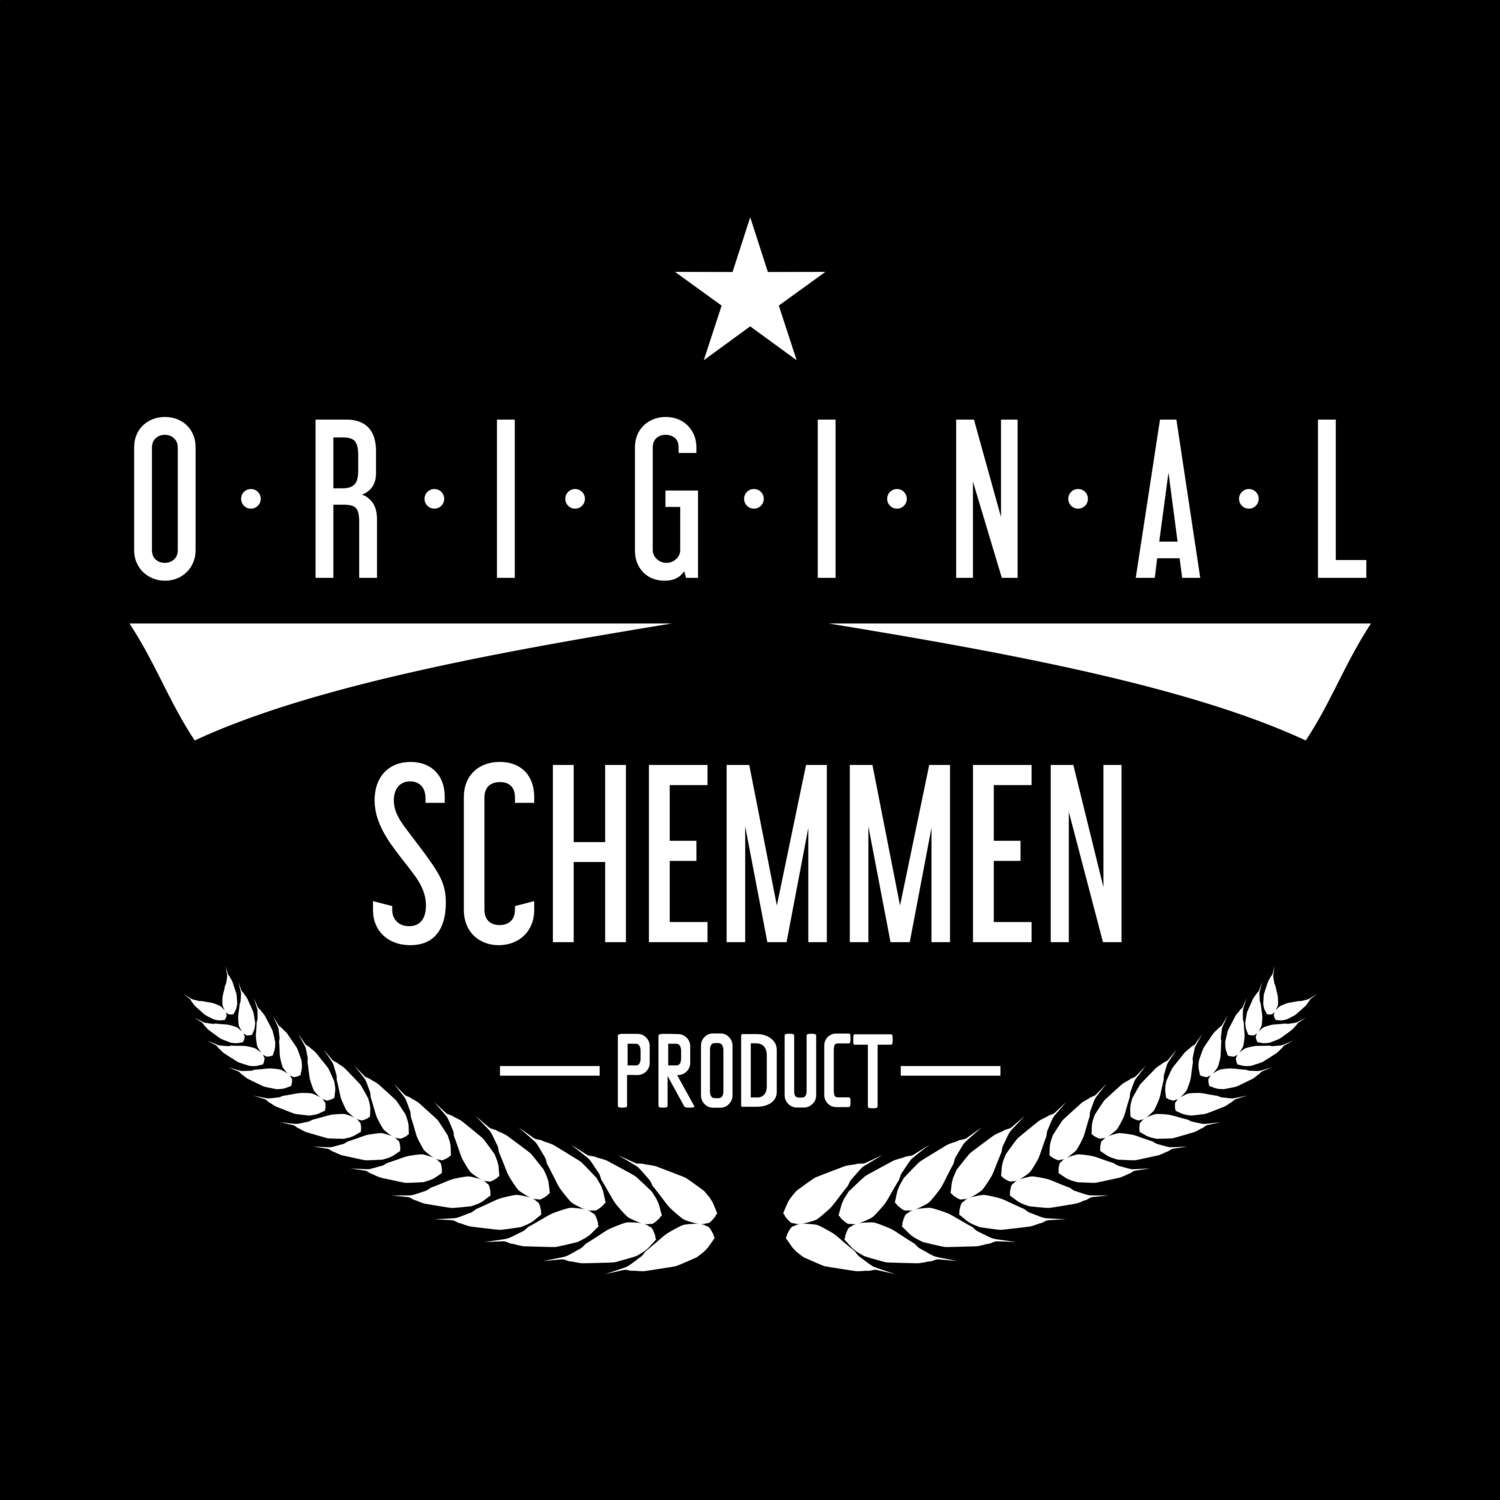 Schemmen T-Shirt »Original Product«